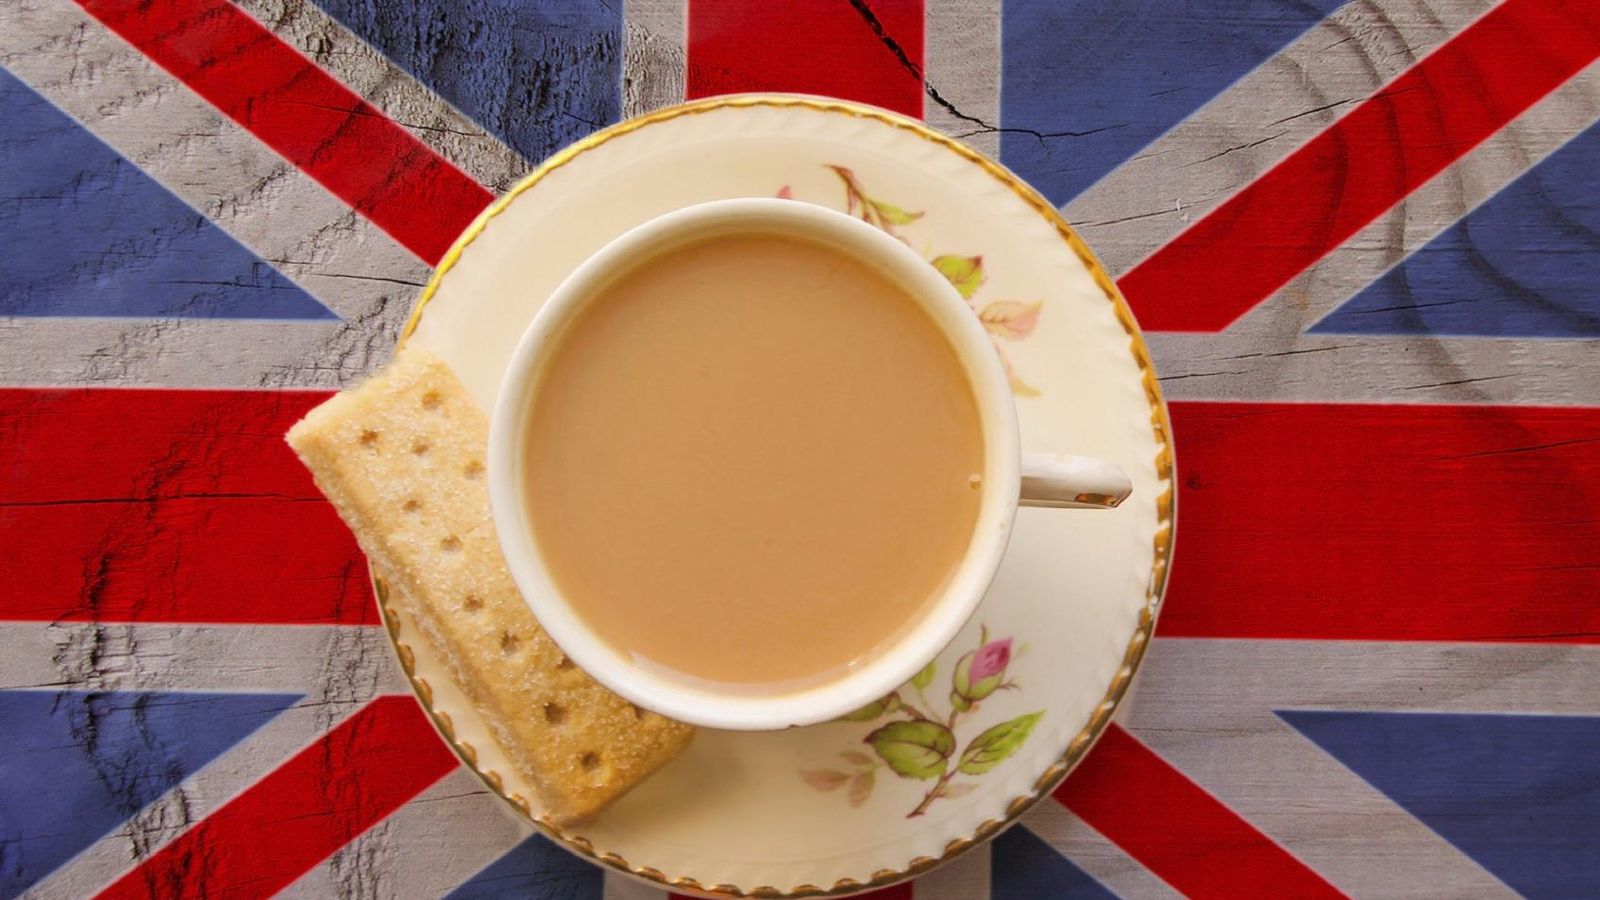 Foto: El té es de origen chino, pero los ingleses lo convirtieron en su bebida nacional. (iStock)